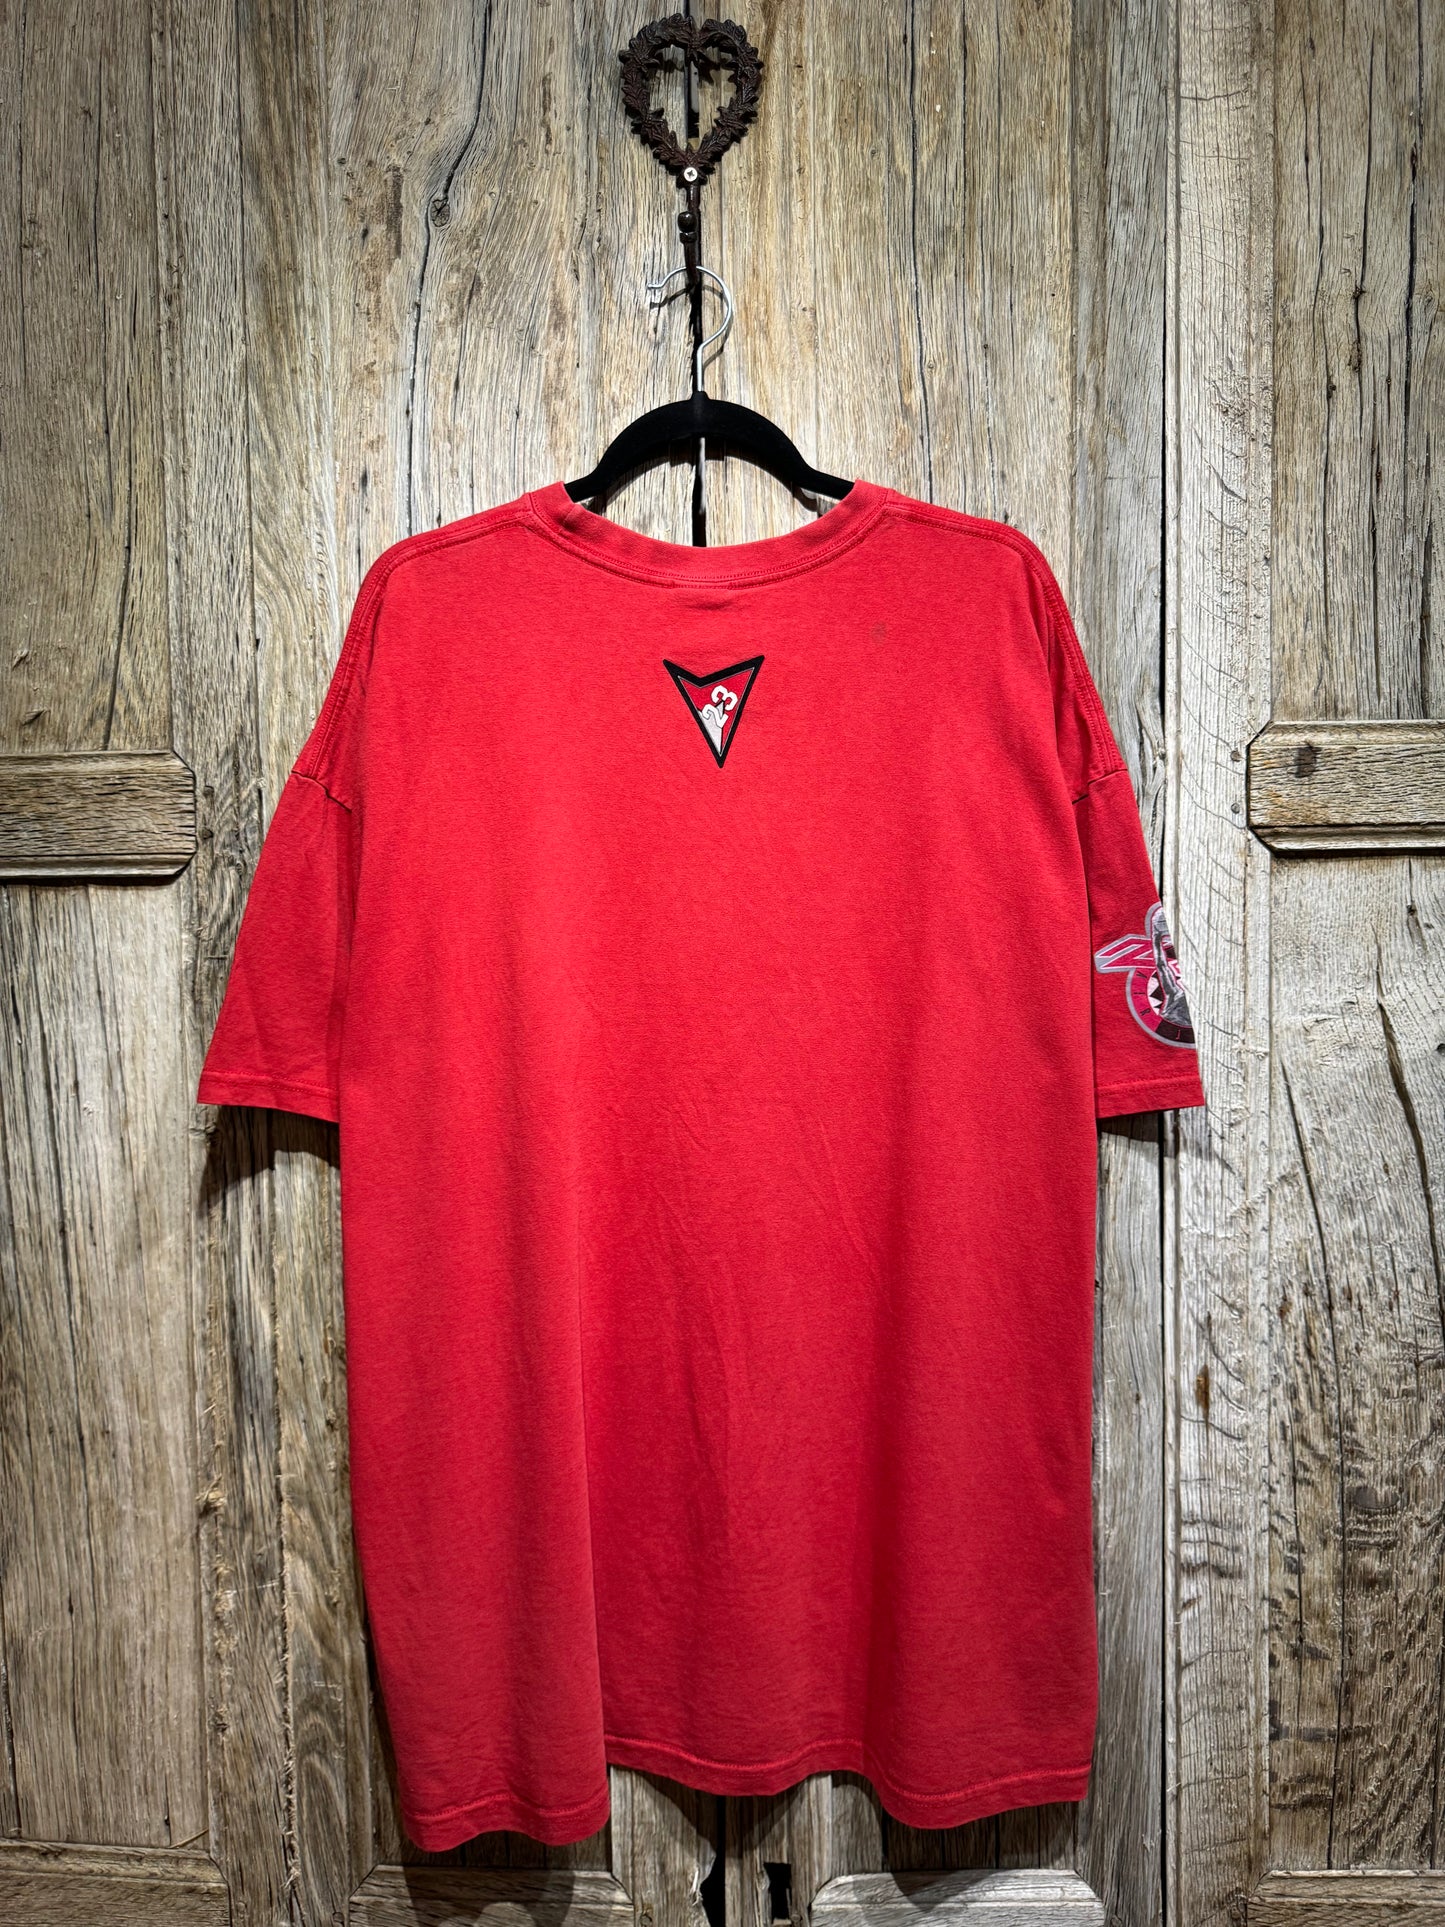 Vintage Red Jordan Air Logo Tee